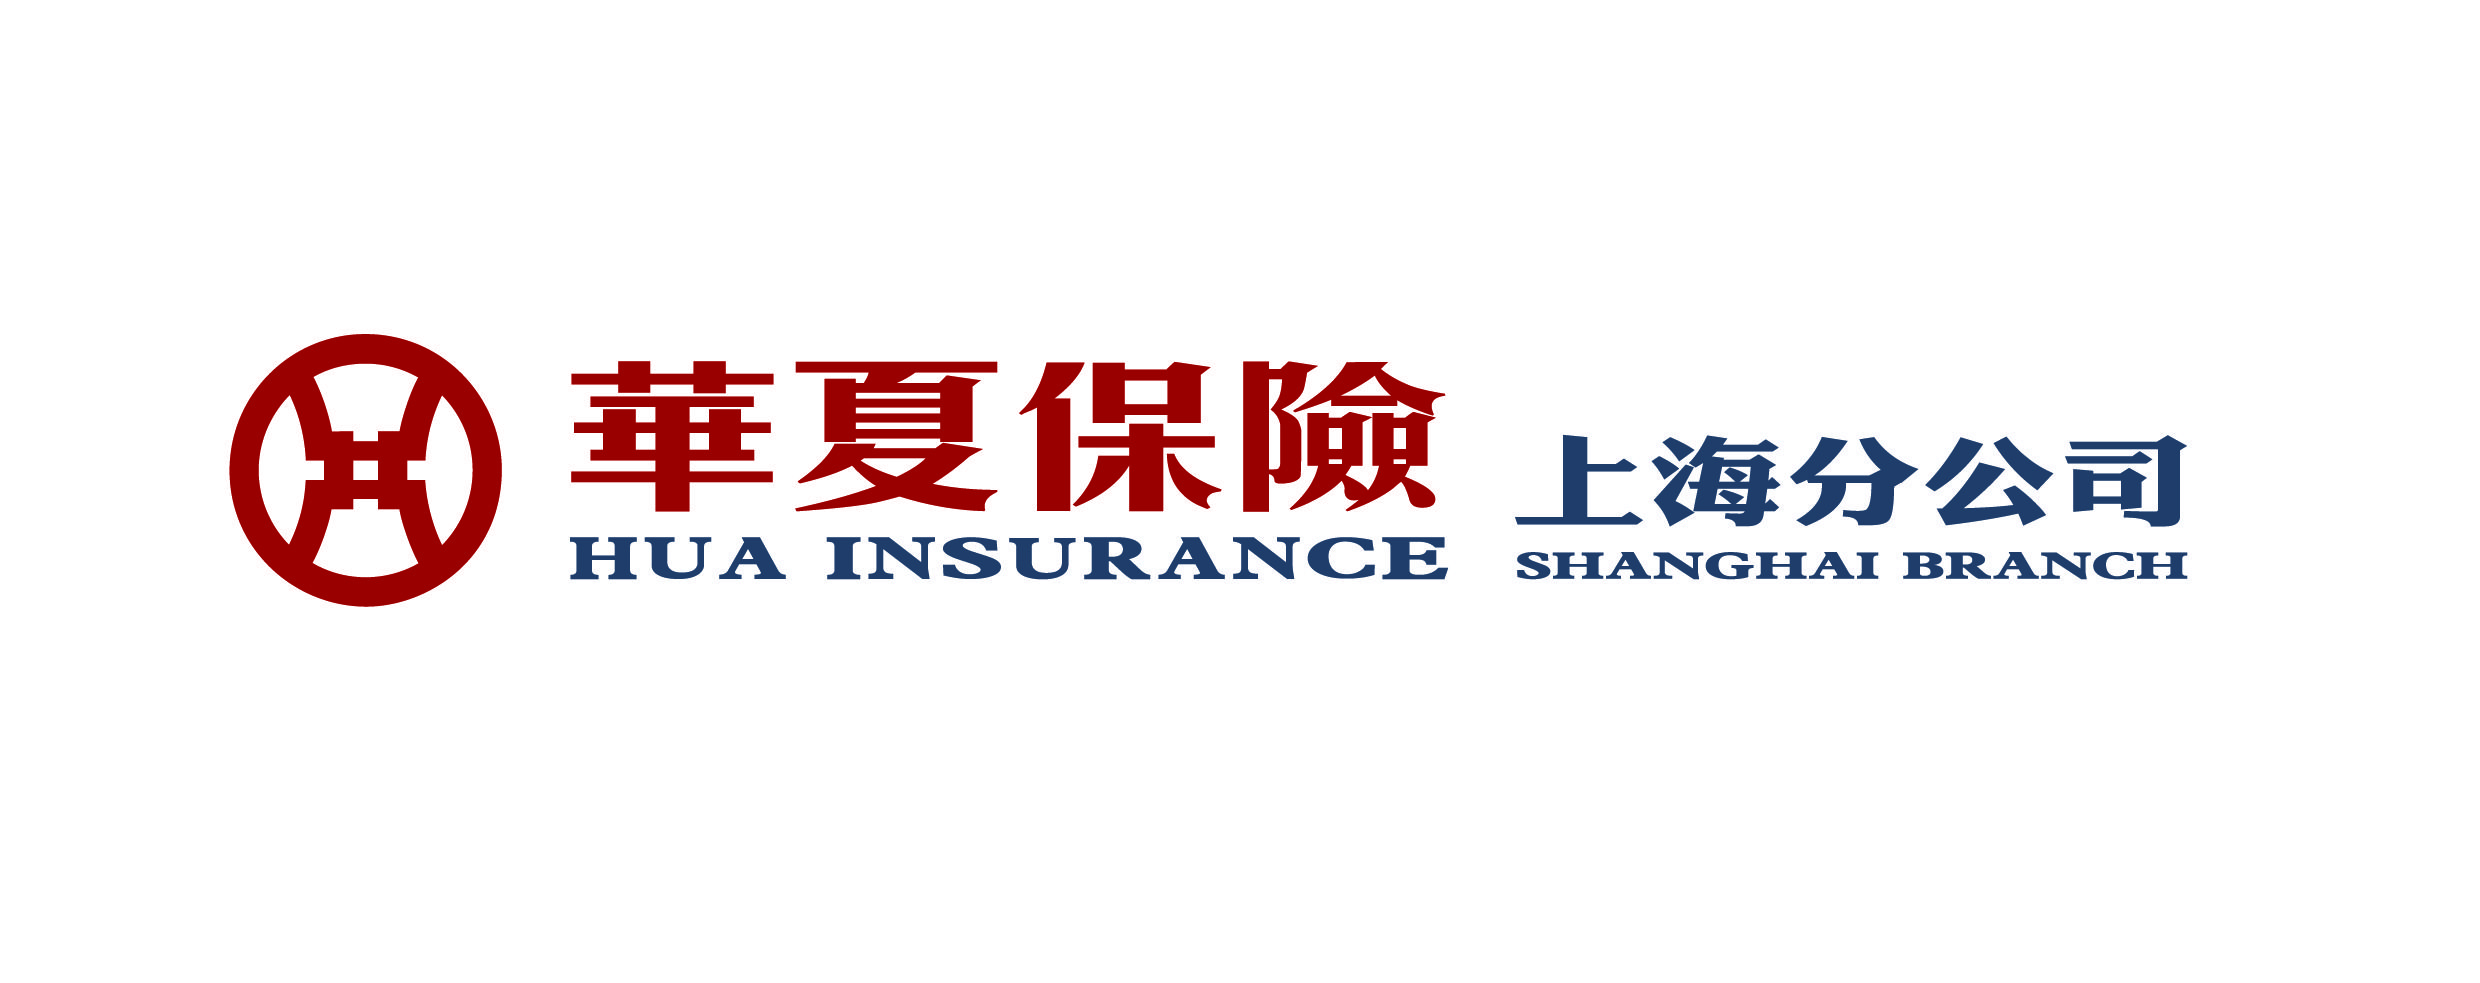 校企共建谋发展未来领袖谱新篇华夏保险上海分公司与上海交大安泰经管